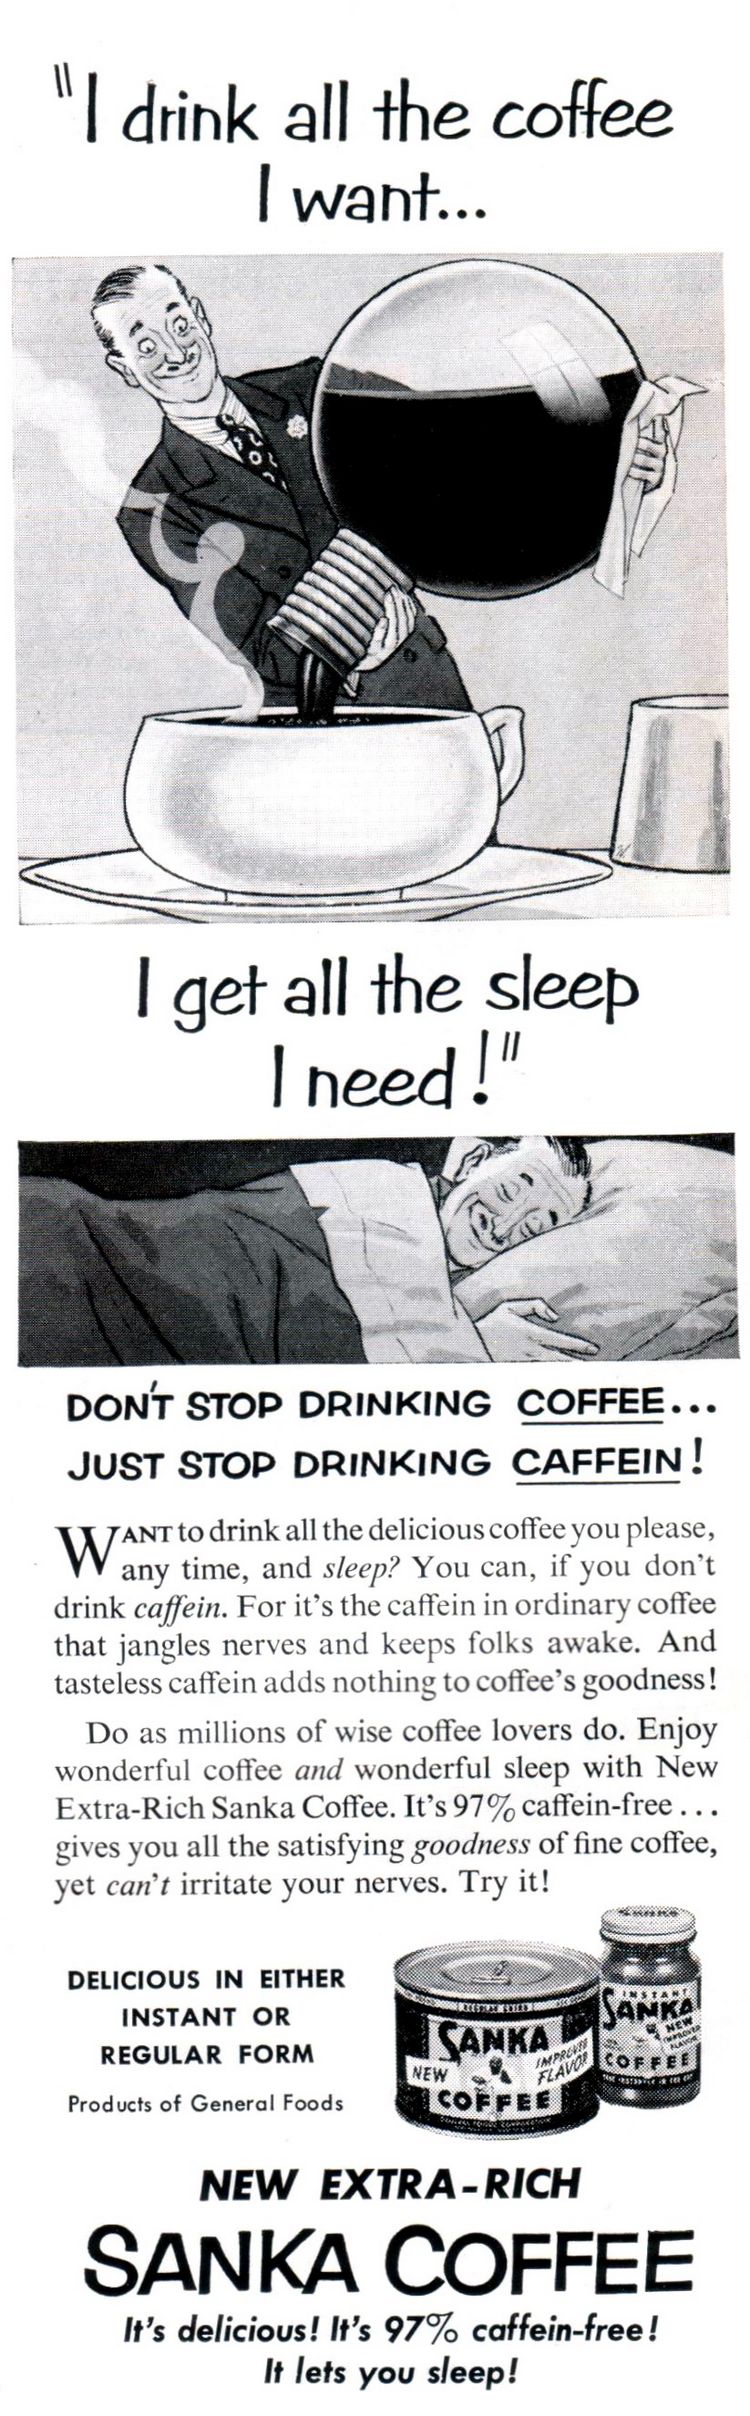 Реклама на кафе без кофеин.